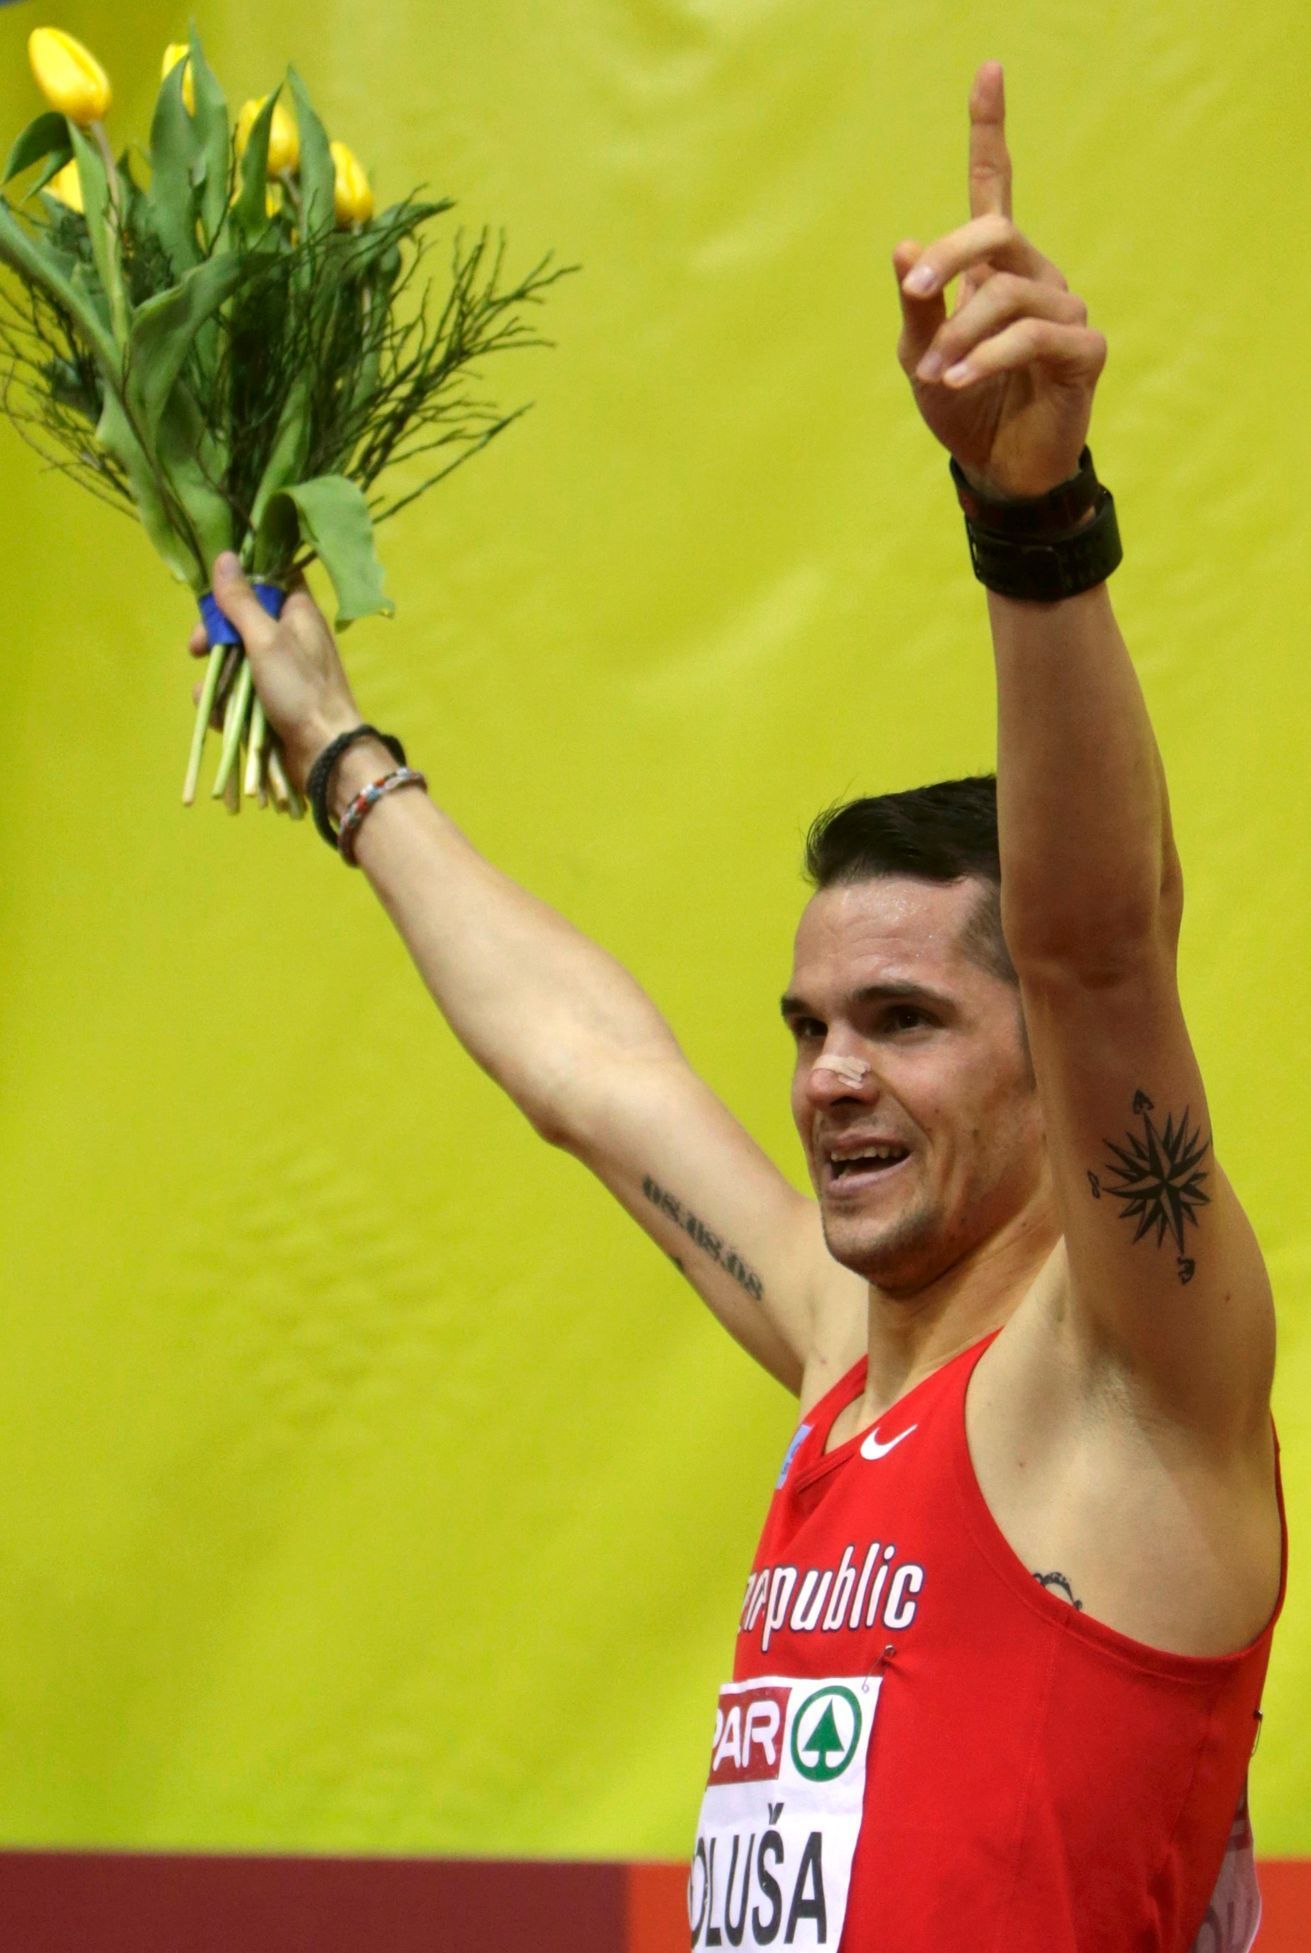 HME v atletice Praha 2015: Jakub Holuša (1500 m)